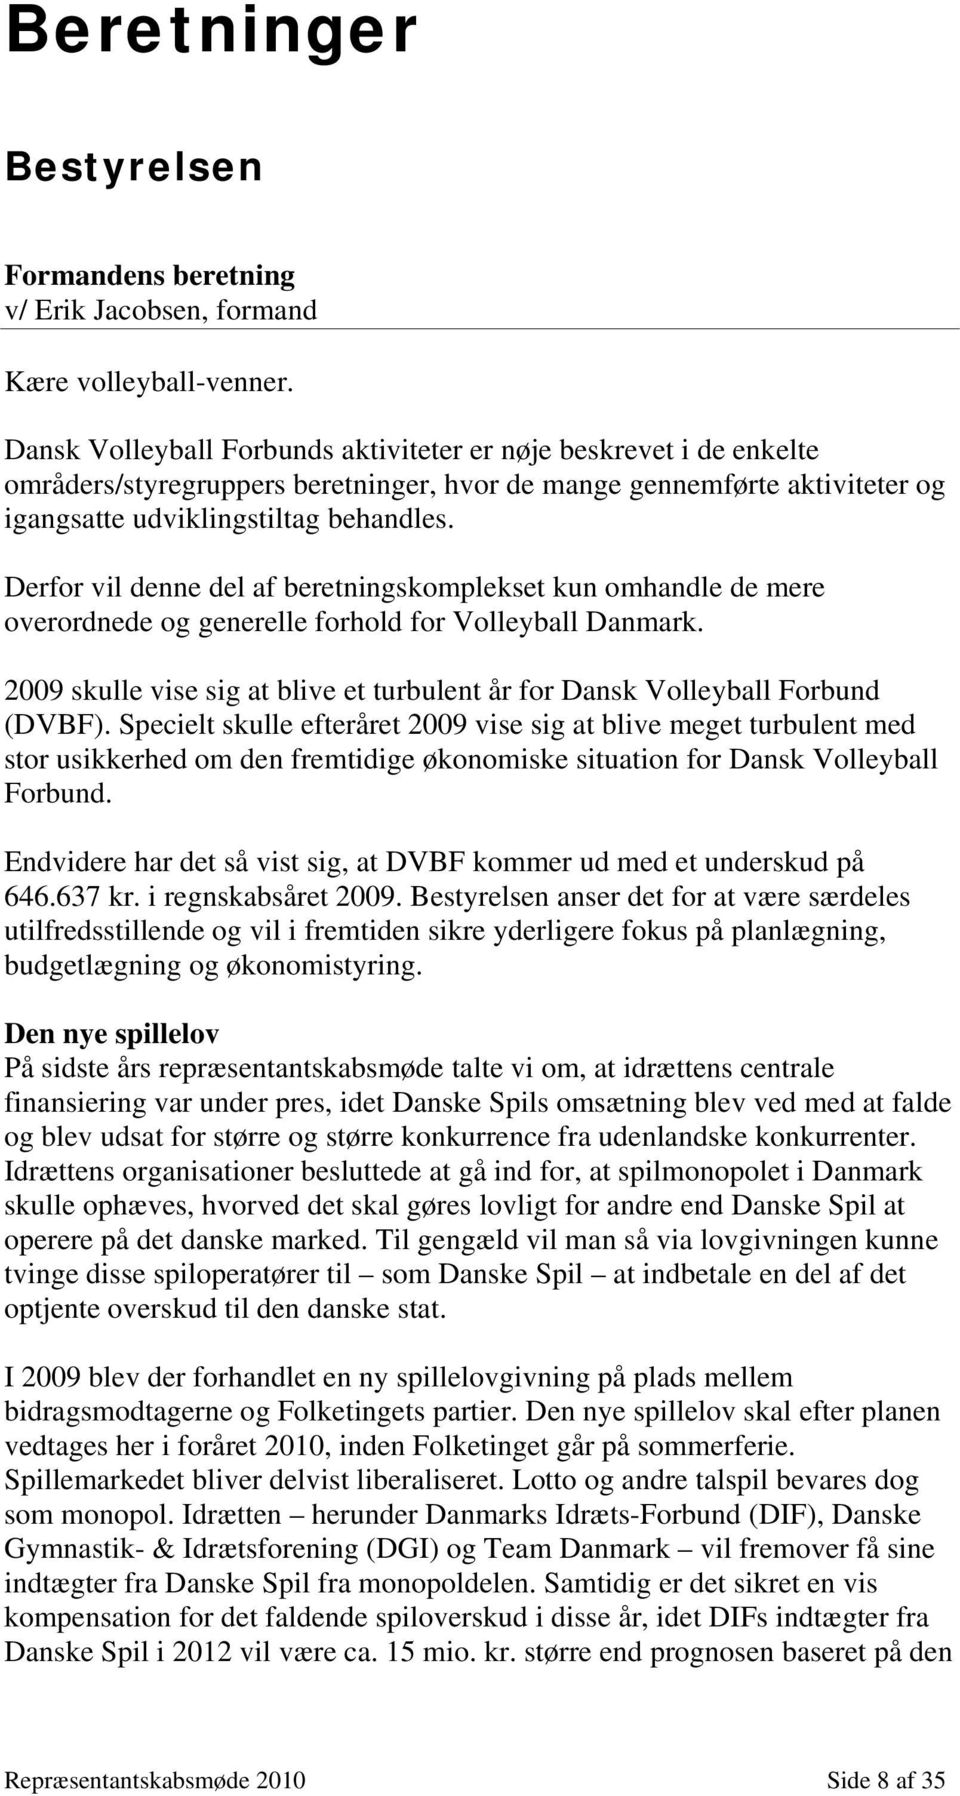 Derfor vil denne del af beretningskomplekset kun omhandle de mere overordnede og generelle forhold for Volleyball Danmark.